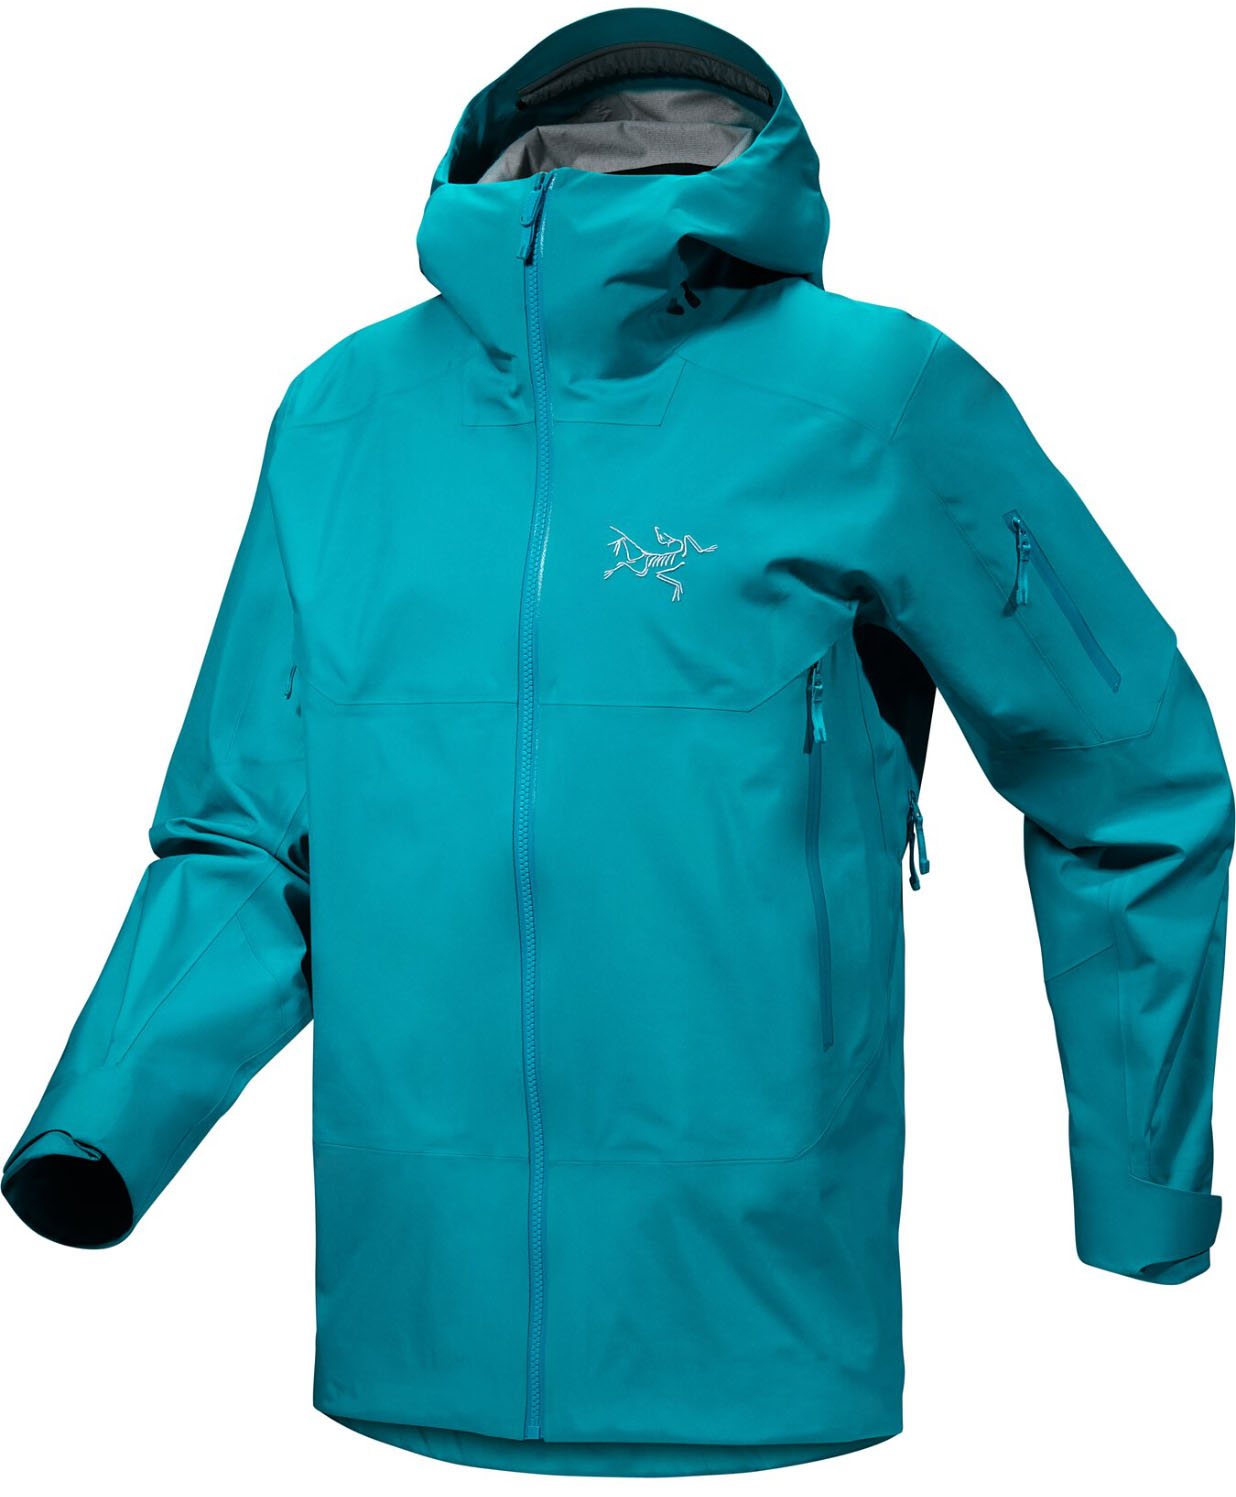 Arc'teryx Sabre ski jacket